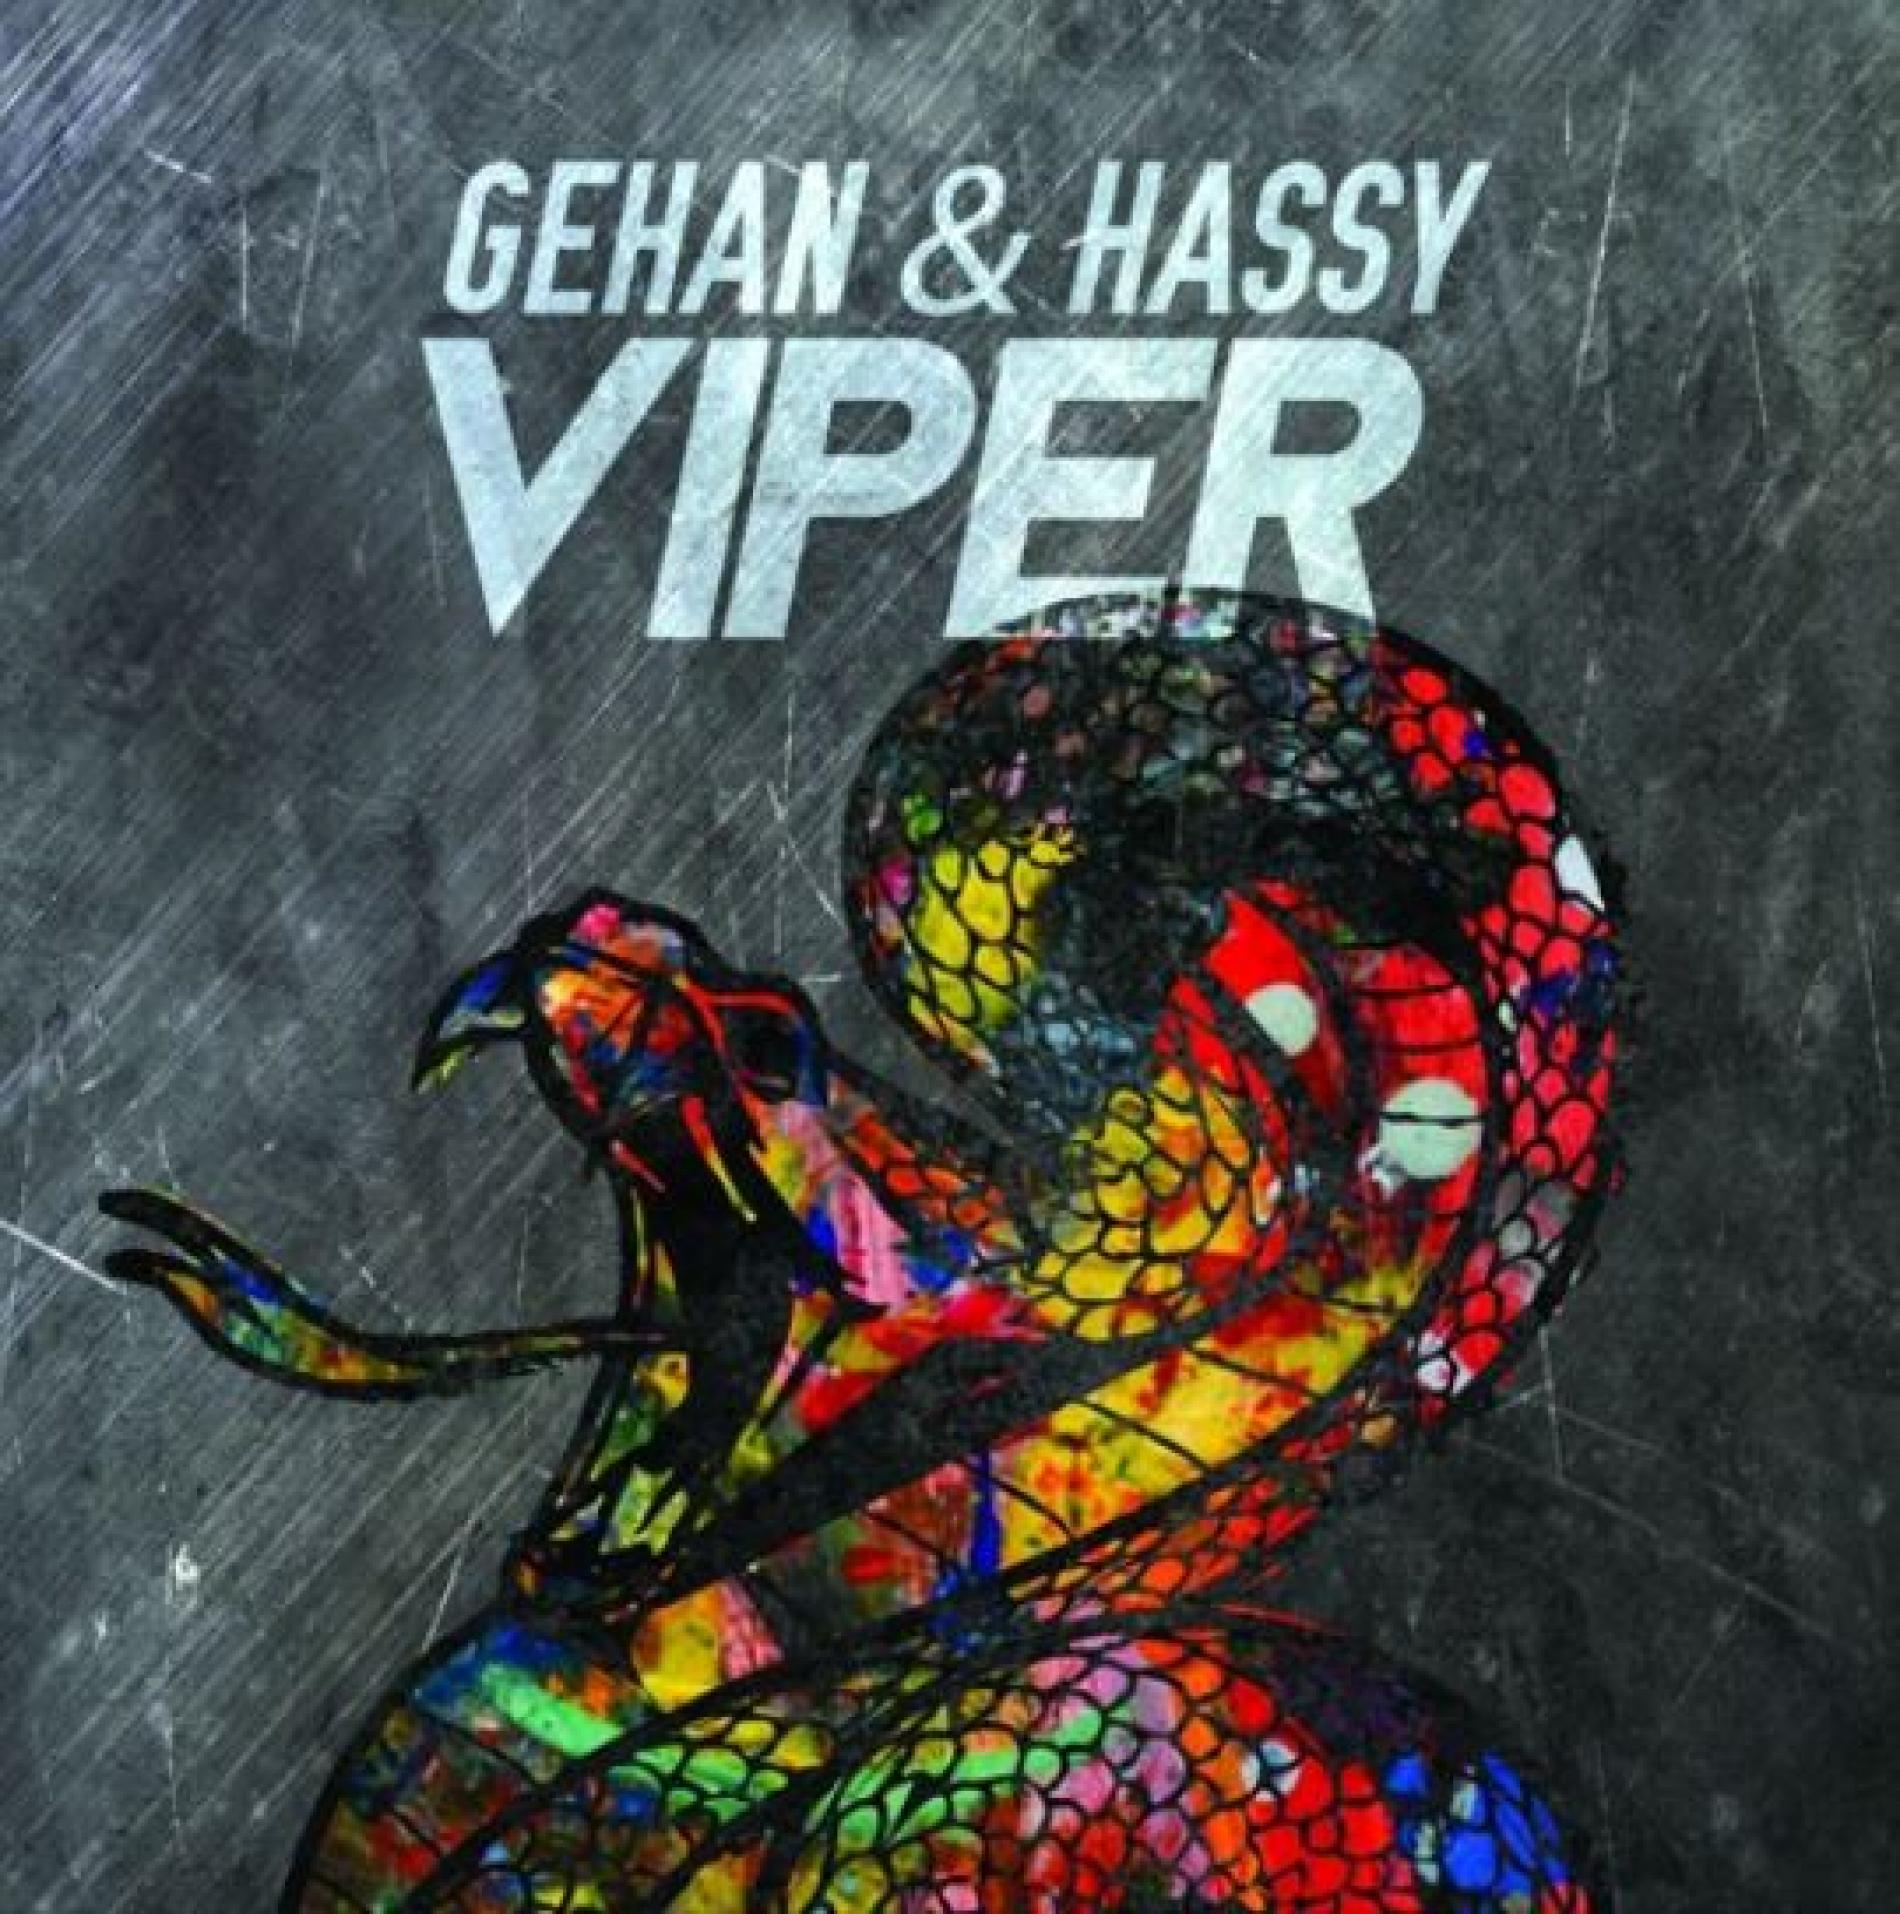 Gehan & Hassy – Viper